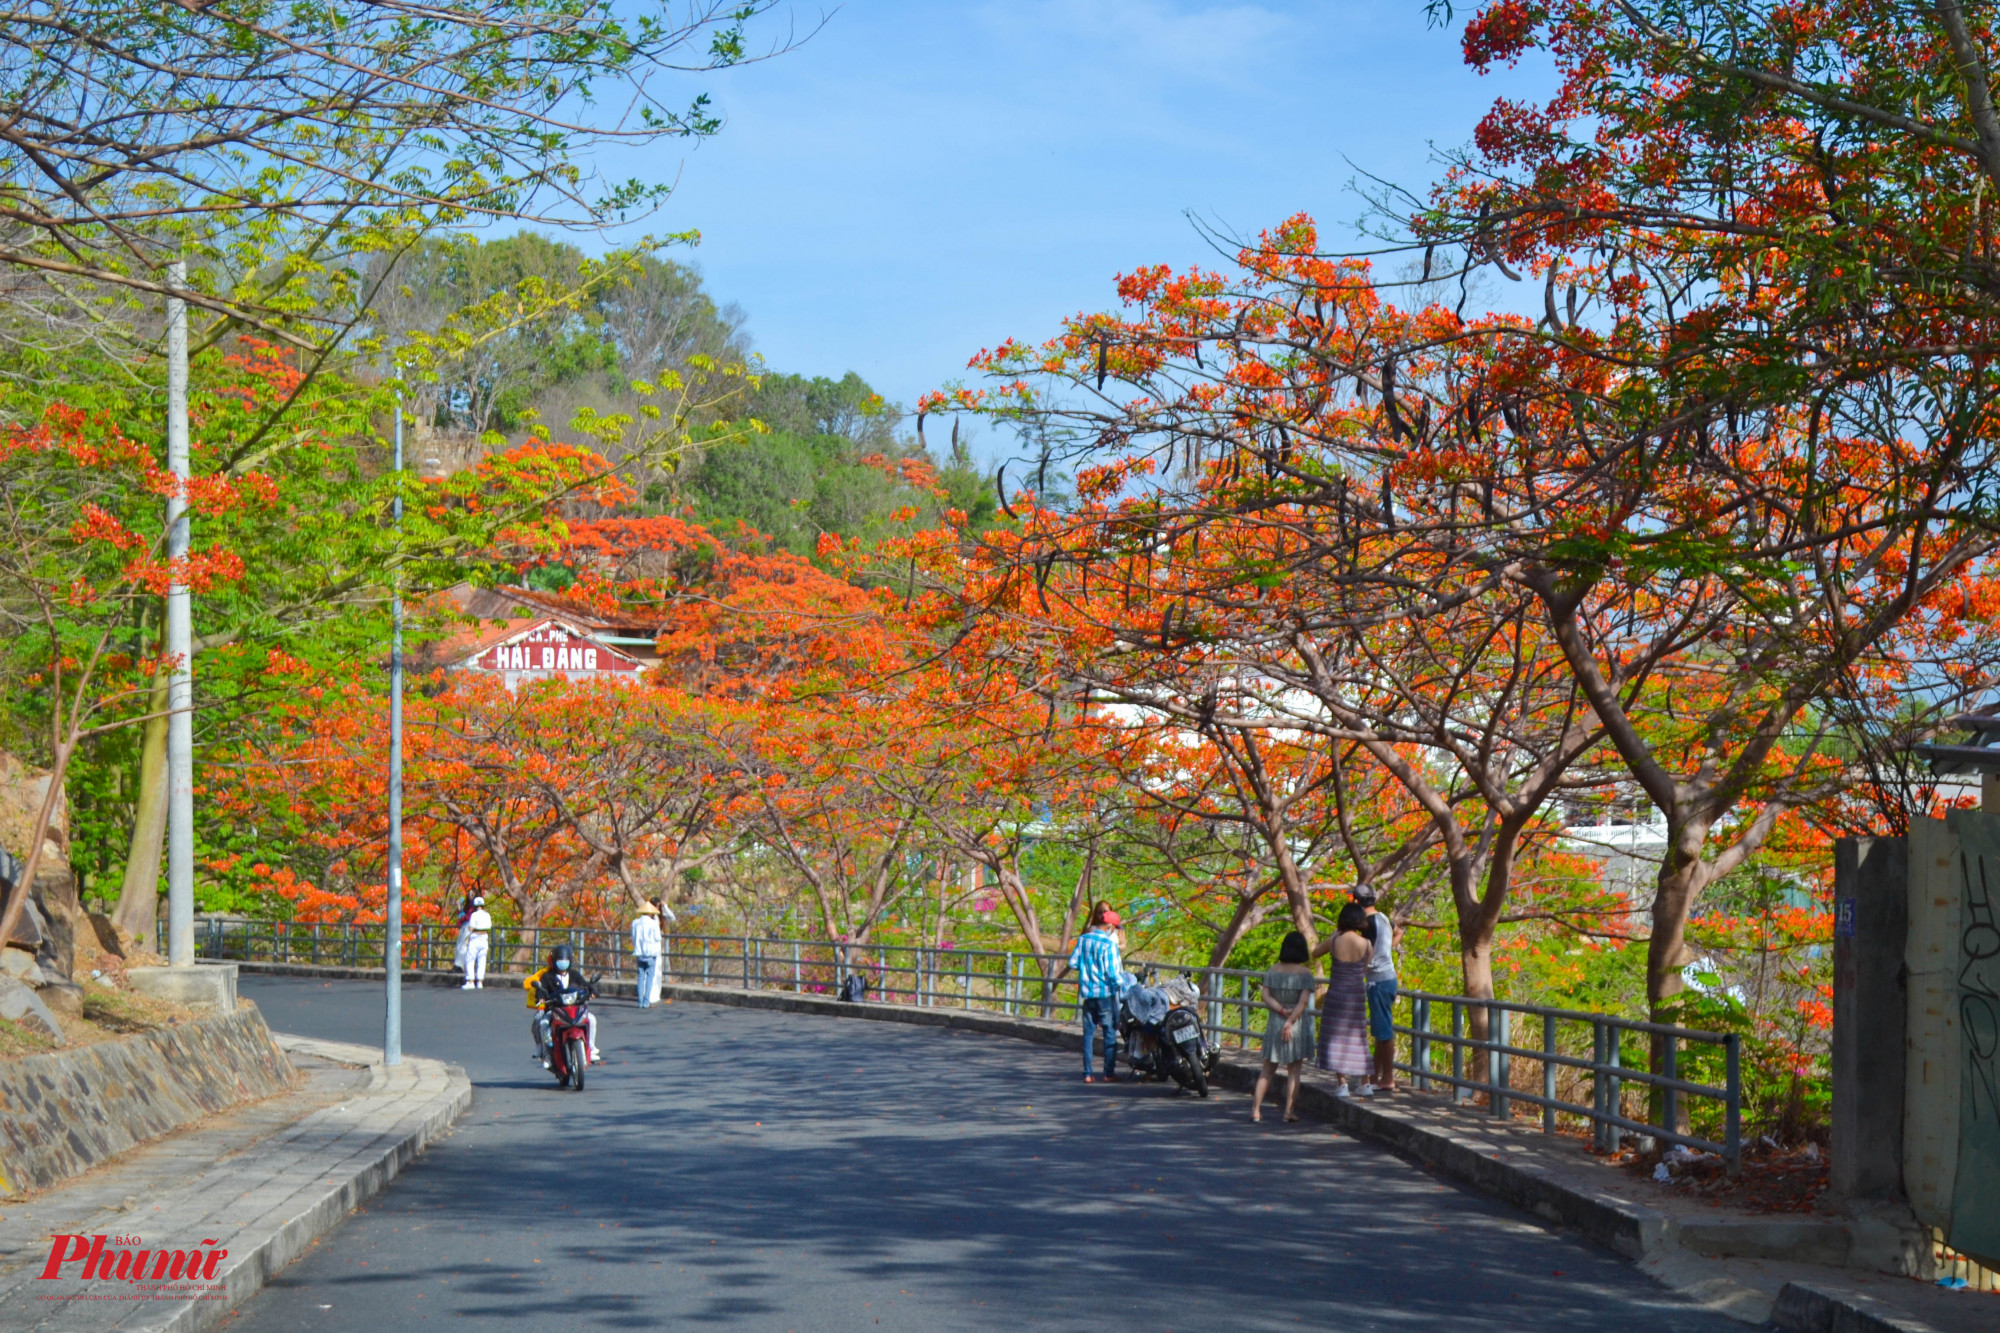 Cung đường lên ngọn Hải đăng (núi nhỏ, TP Vũng Tàu) được nhuộm đỏ màu phượng vĩ